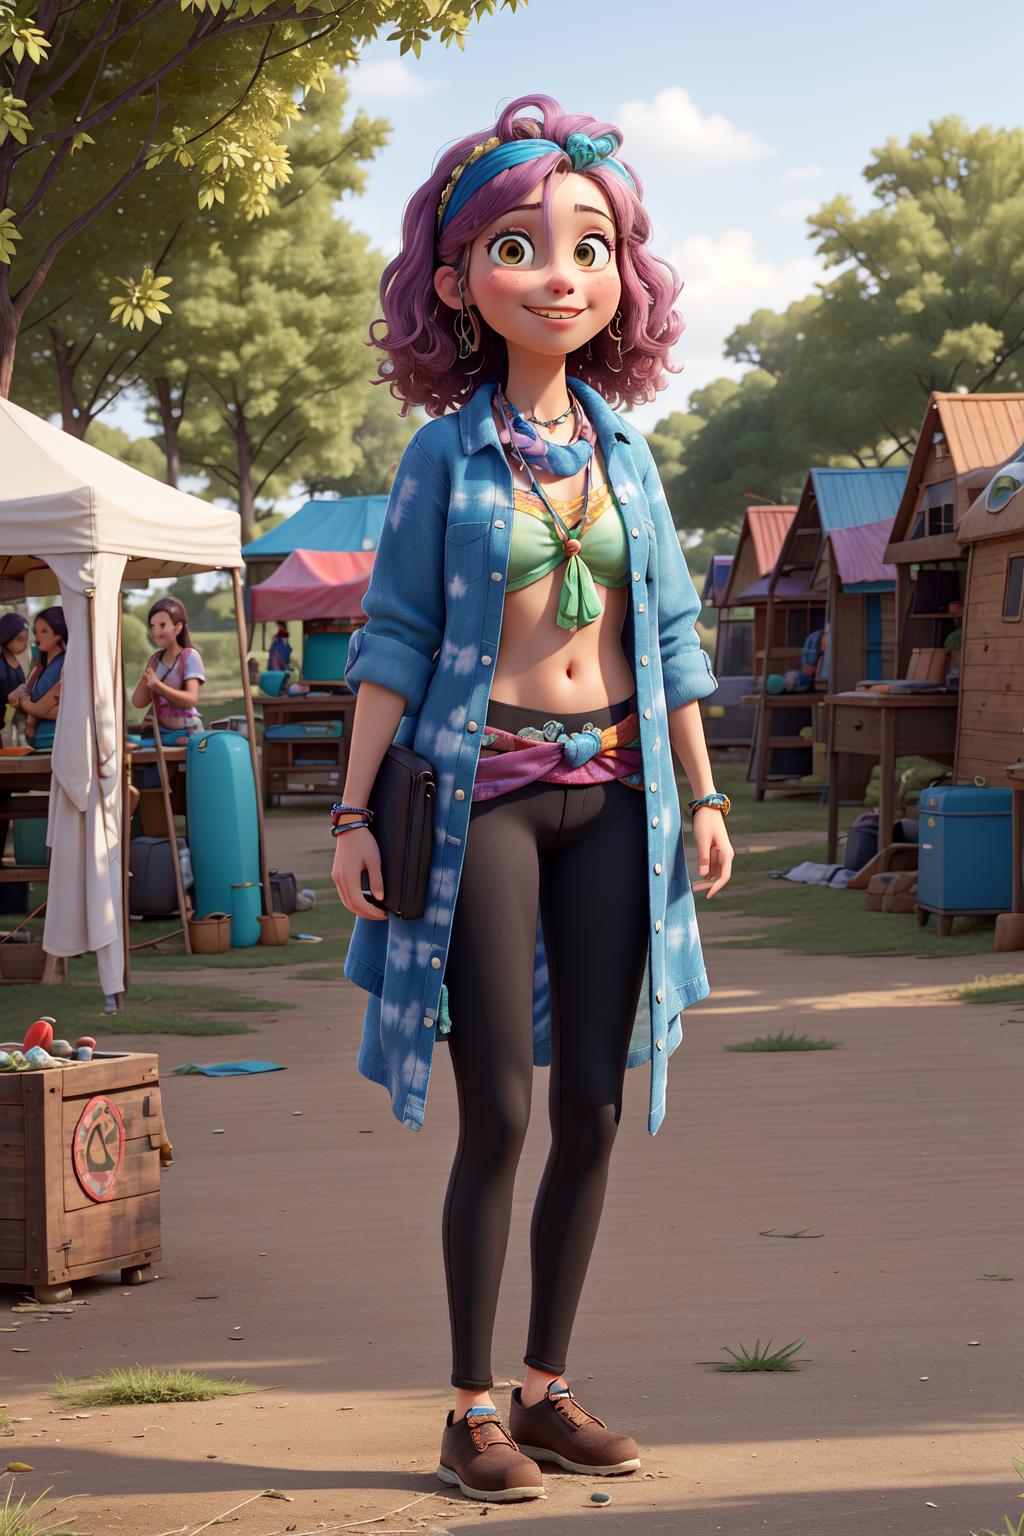 Disney Pixar Cartoon type B image by PromptSharingSamaritan